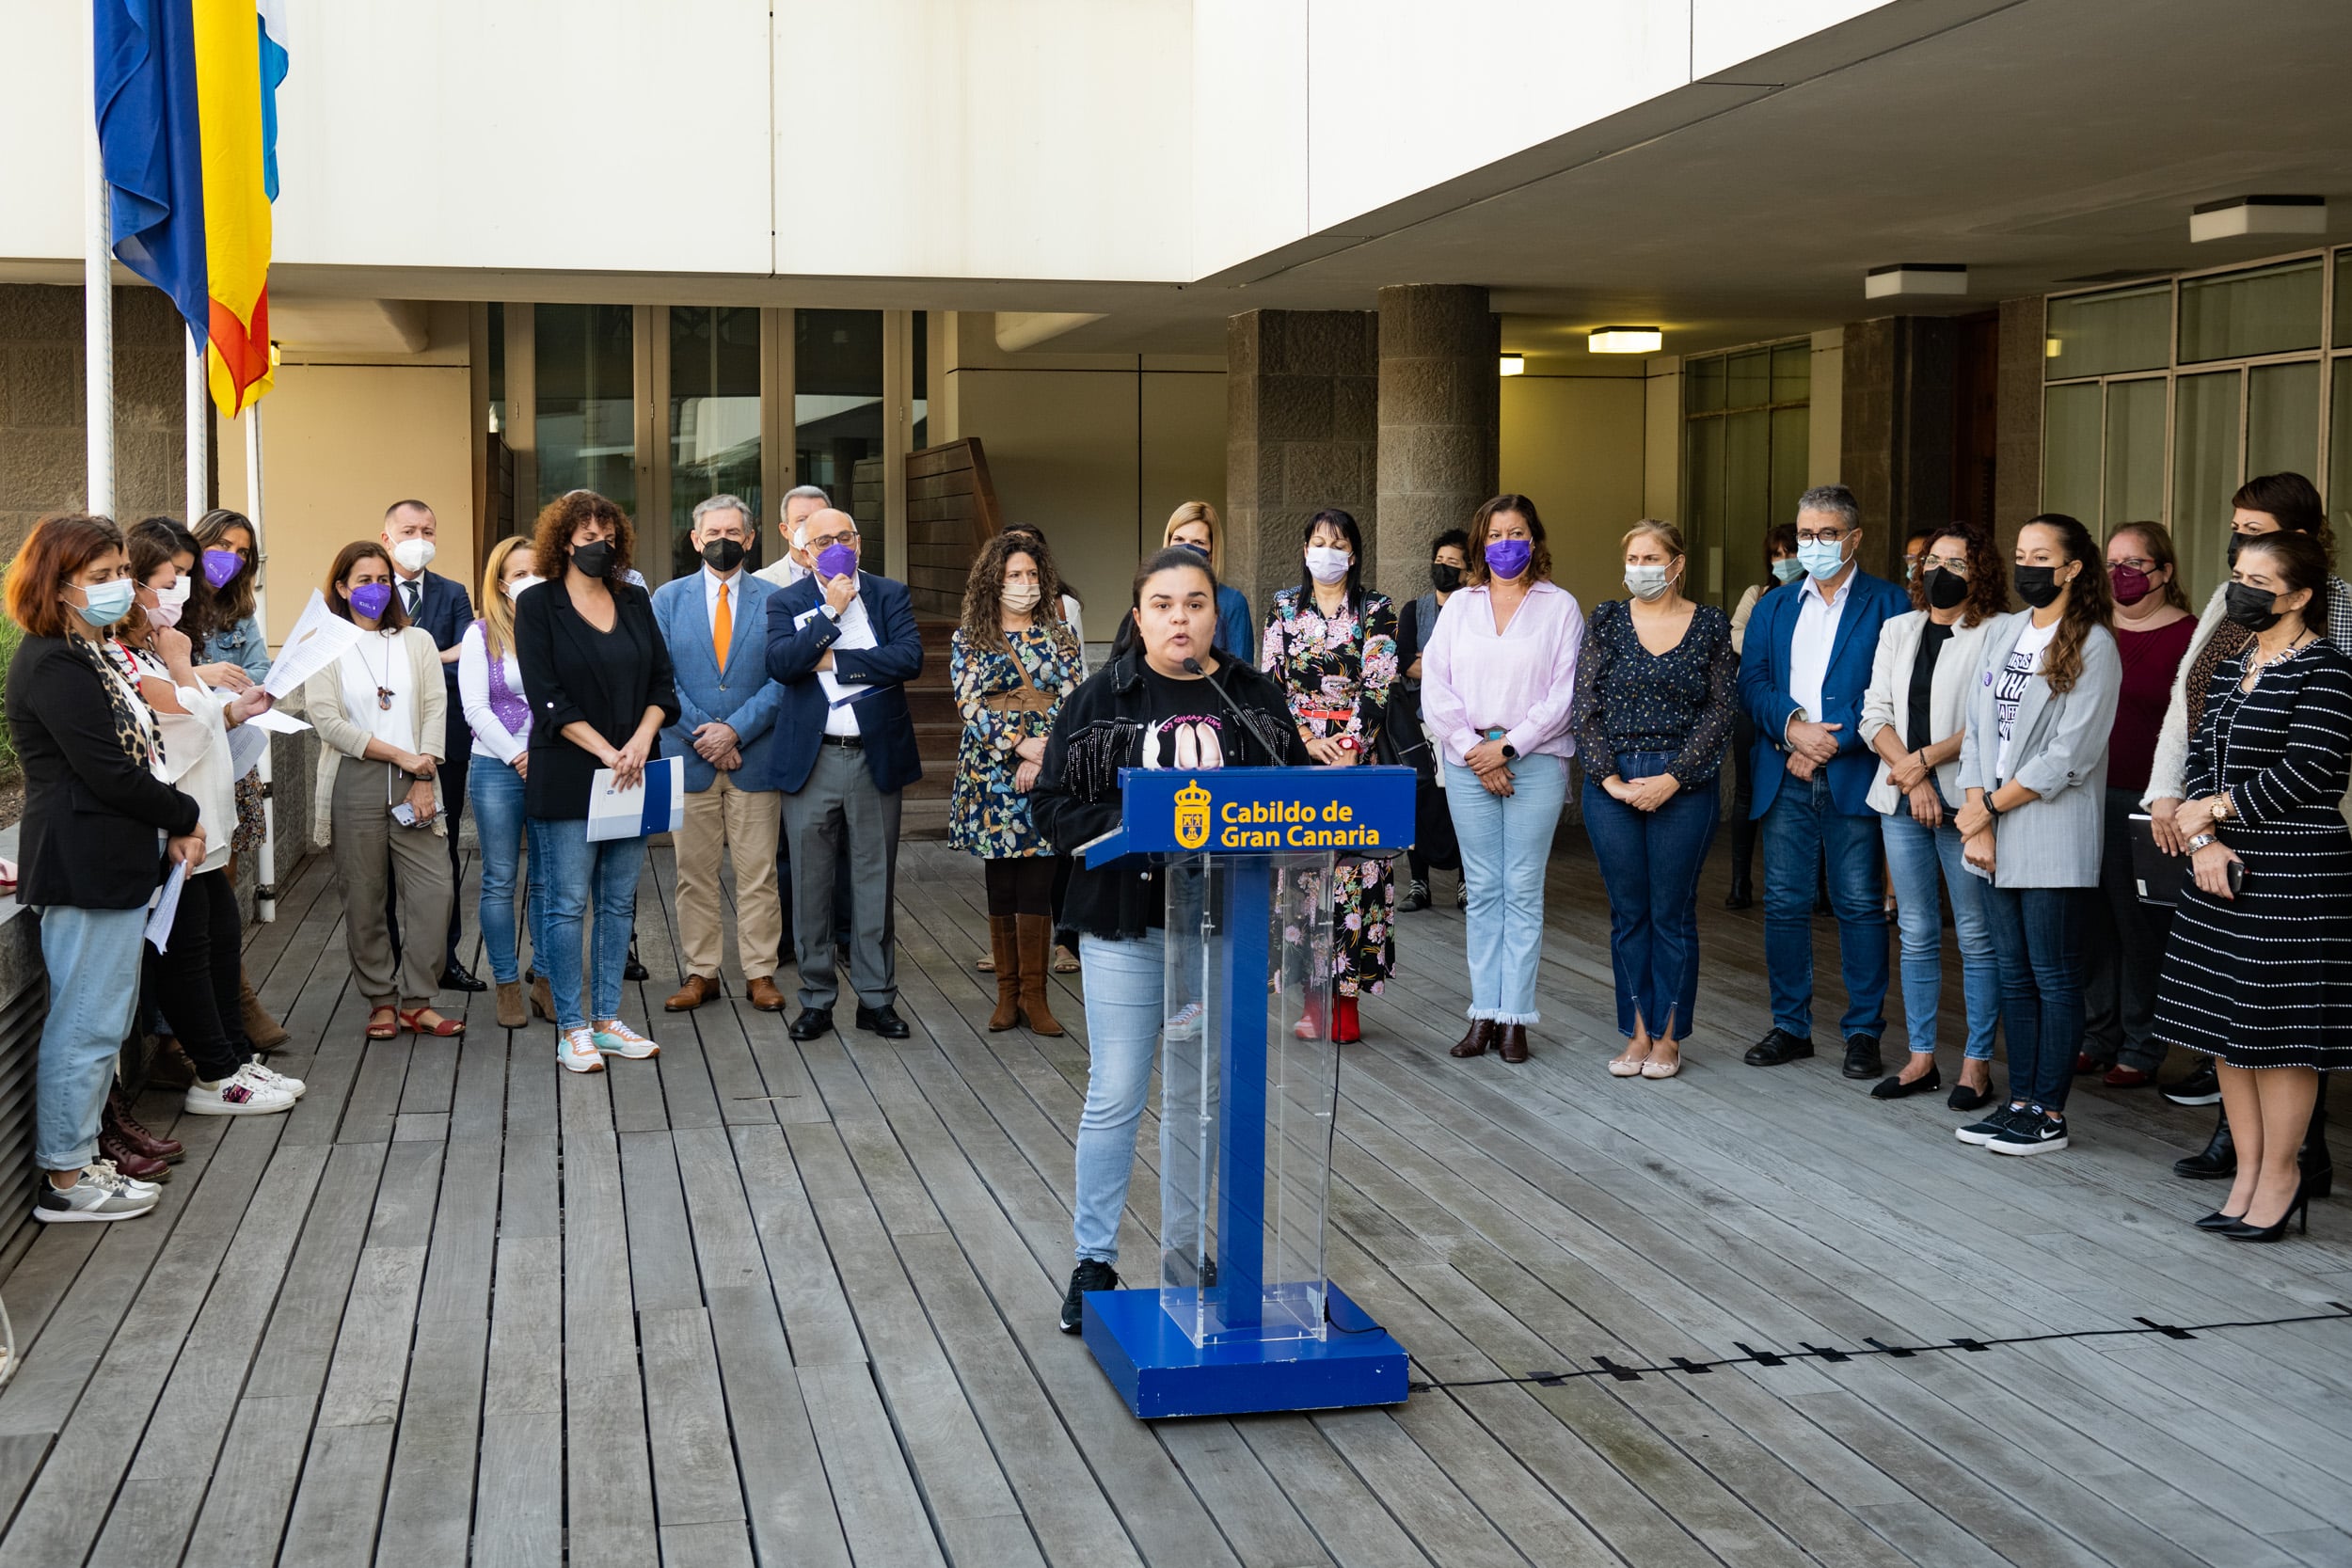 El Cabildo de Gran Canaria promueve la unidad para luchar contra las violencias machistas en el acto institucional por el 25N